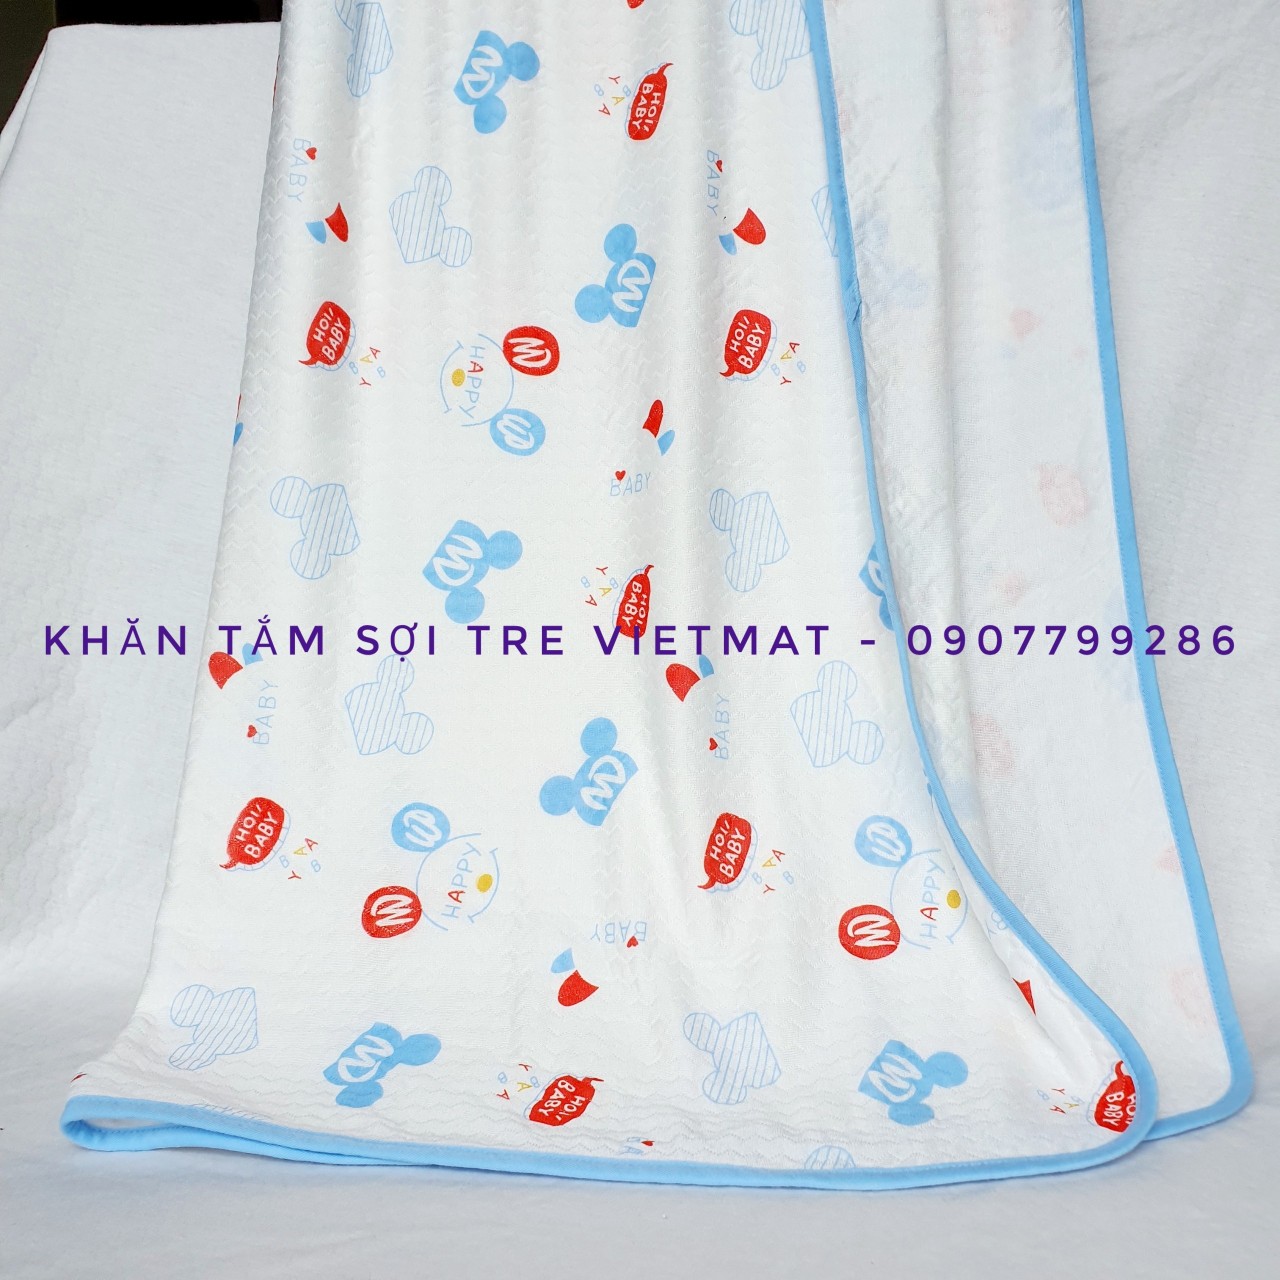 Hình ảnh Khăn tắm trẻ em Vietmat sợi tre organic mềm mịn, thoáng mát, kháng khuẩn và hút nước mạnh